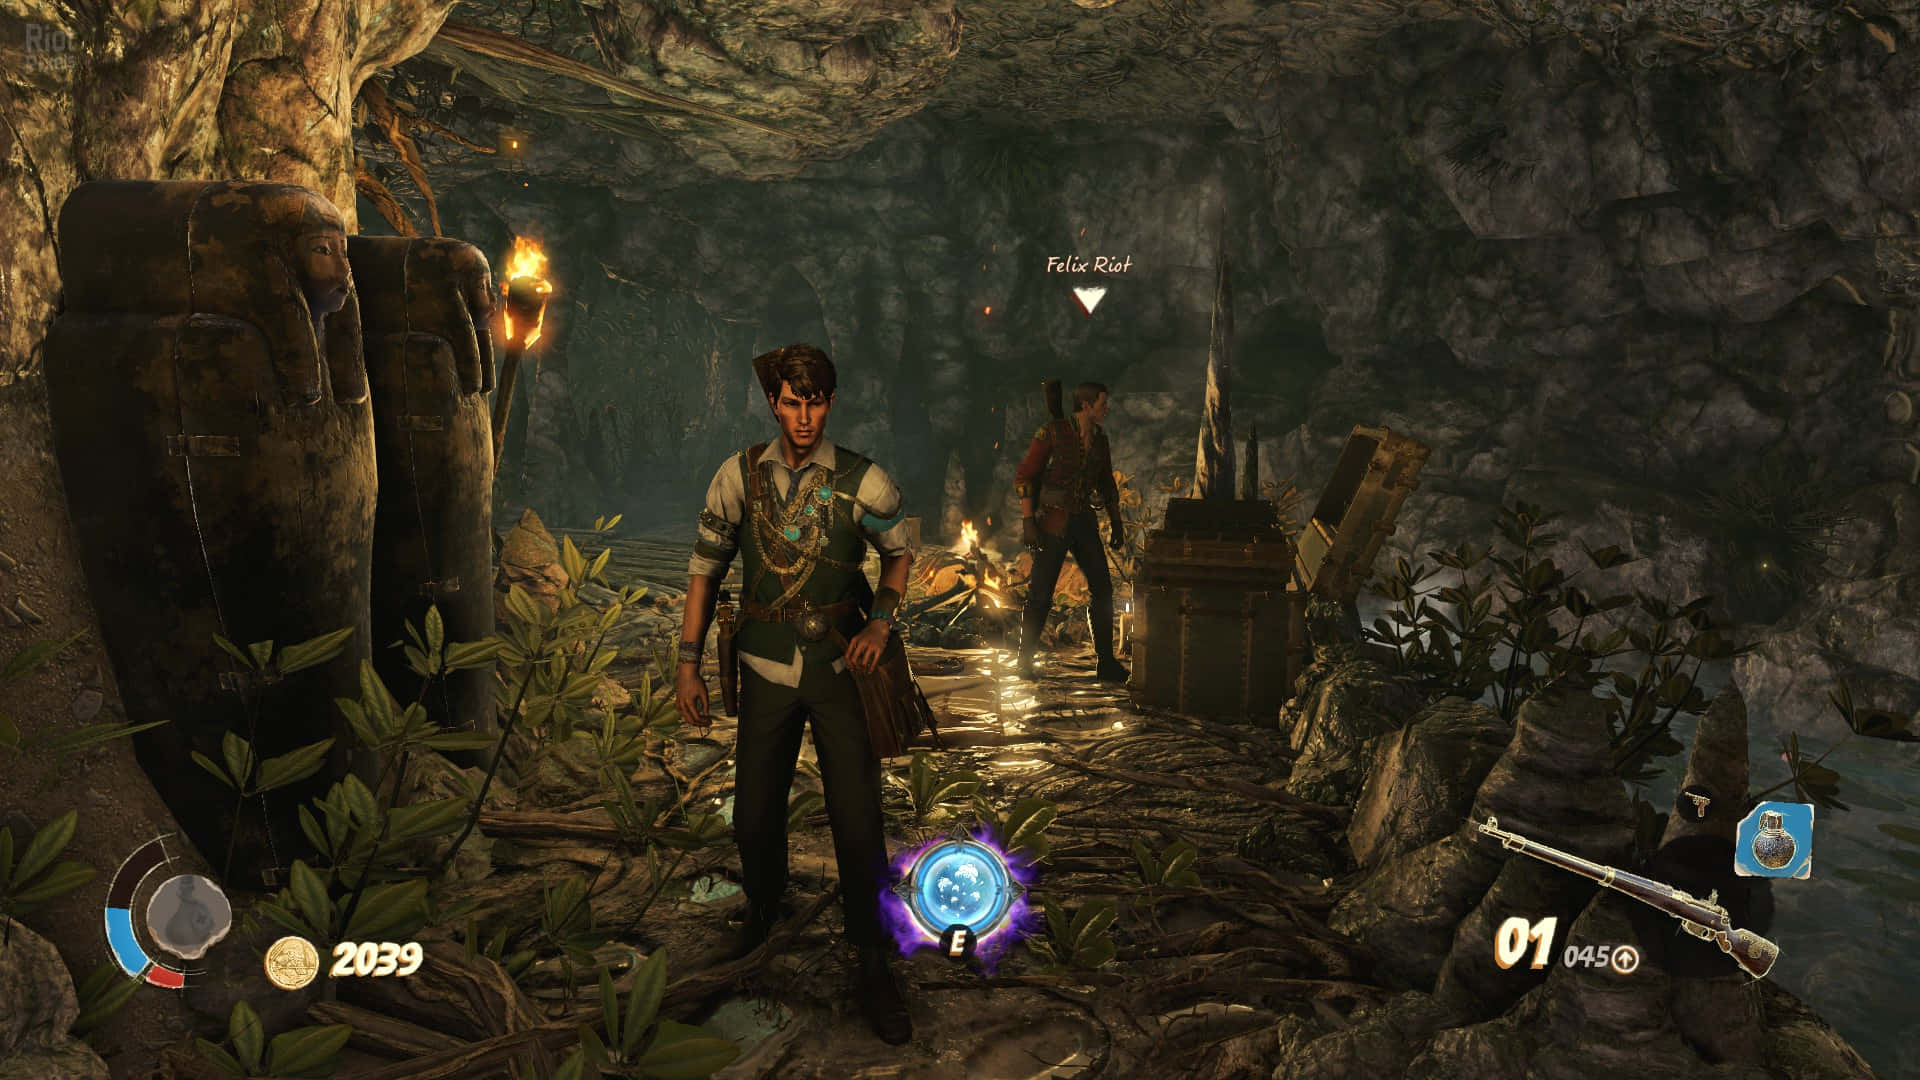 Enskärmdump Från Ett Dataspel Som Visar En Man I En Grotta